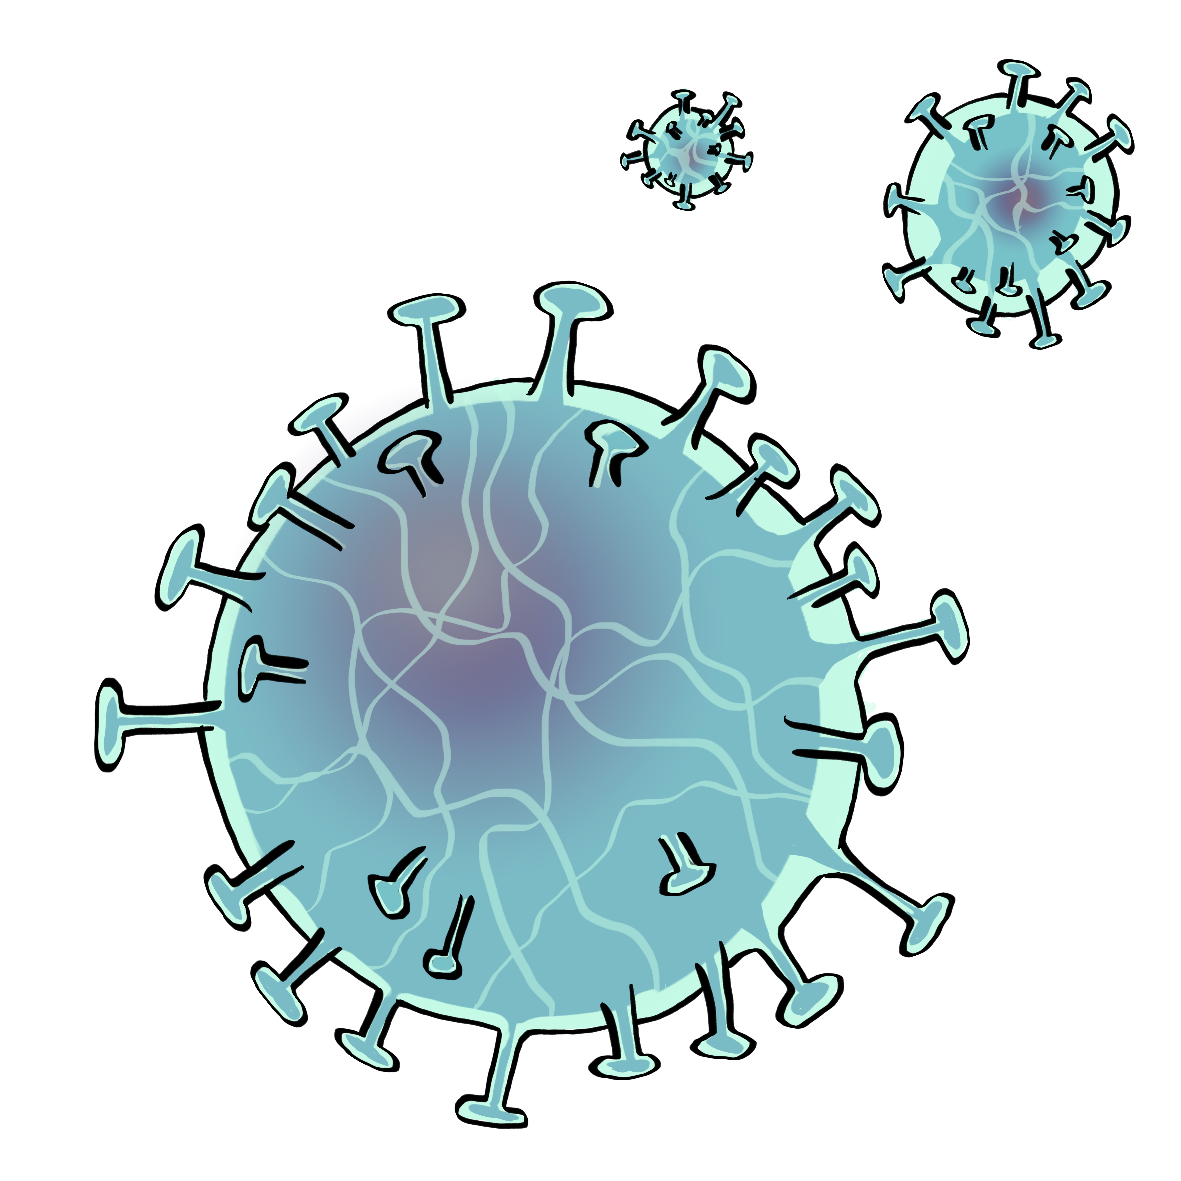 Bild von Corona-Viren. Sie sehen aus wie hellblaue Kugeln mit Stacheln.